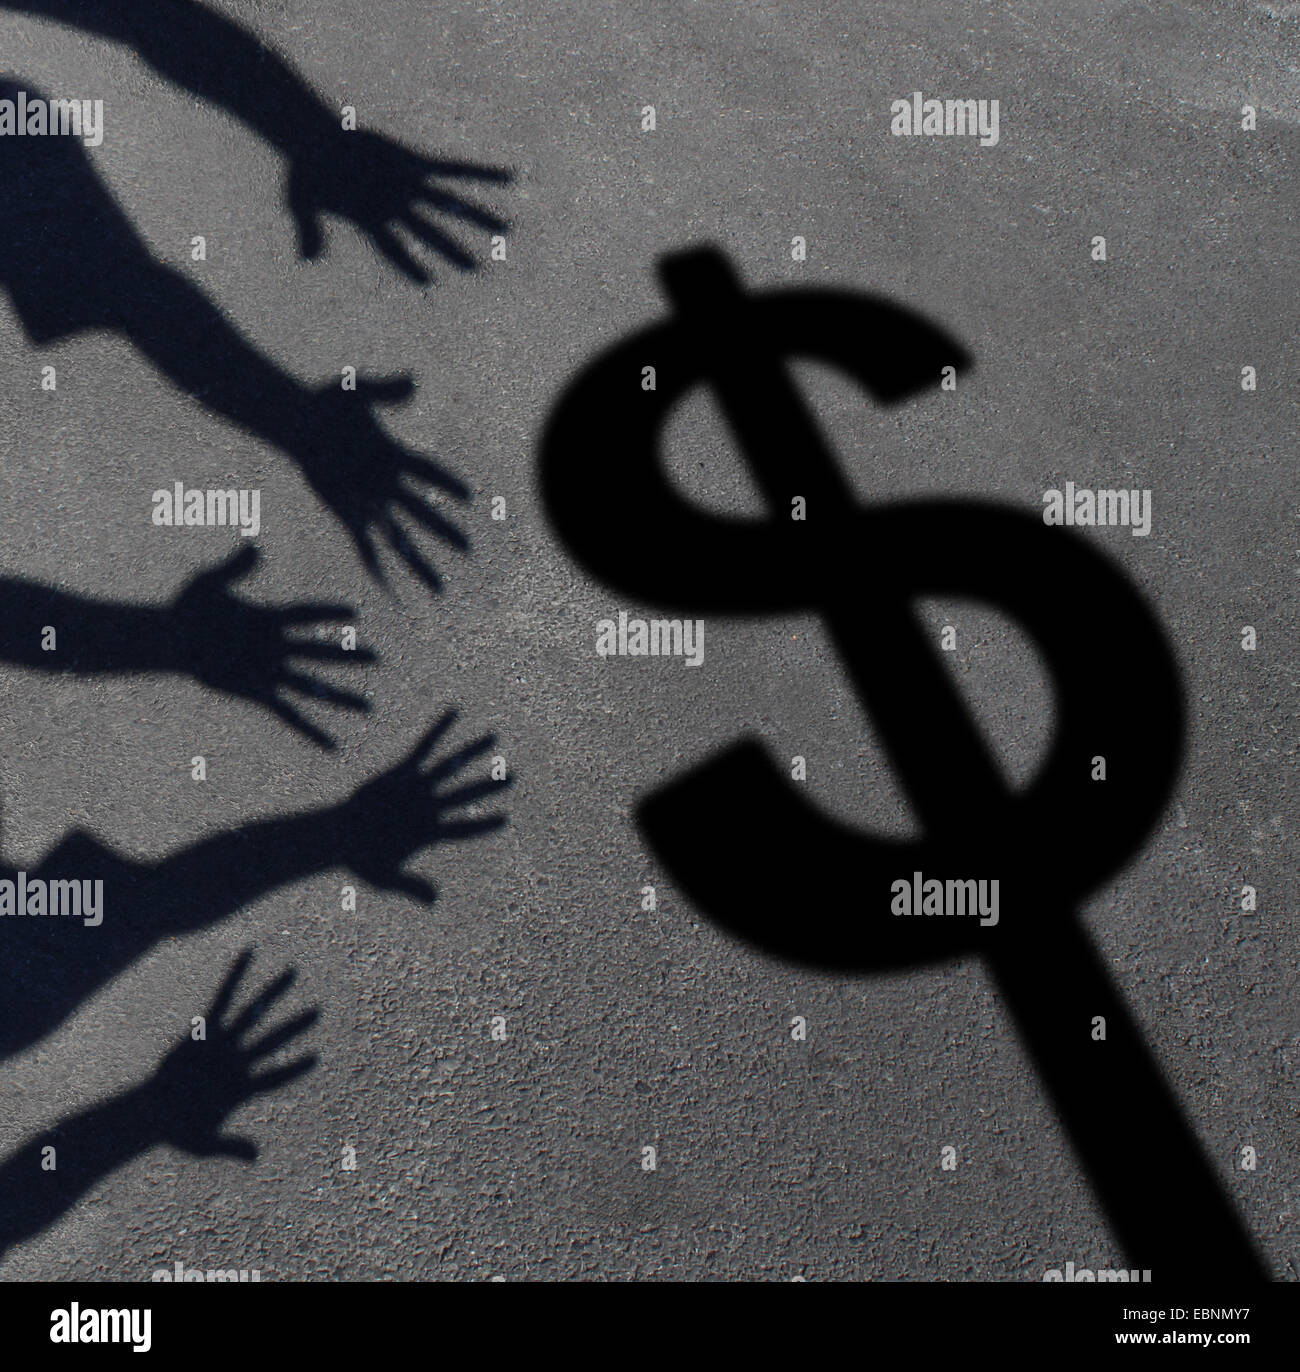 Coger el dinero y la avaricia humana concepto como sombras sobre el pavimento de una grupo de manos alcanzando un signo de dólar como símbolo de la demanda de consumidores e inversores o un icono para el pago de impuestos. Foto de stock